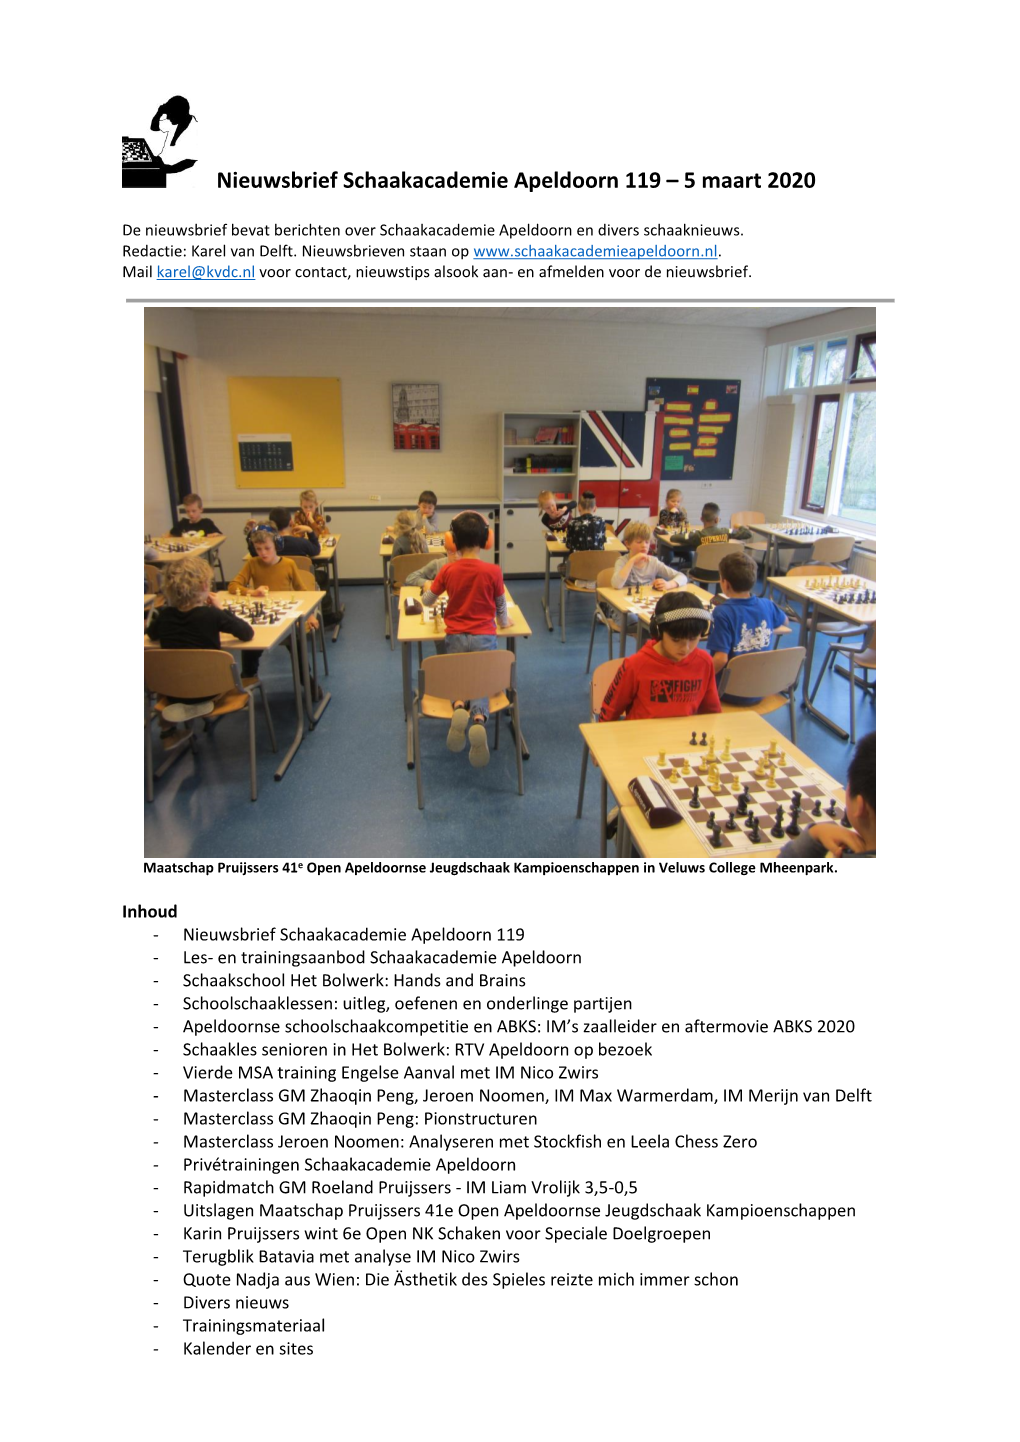 Nieuwsbrief Schaakacademie Apeldoorn 119 – 5 Maart 2020